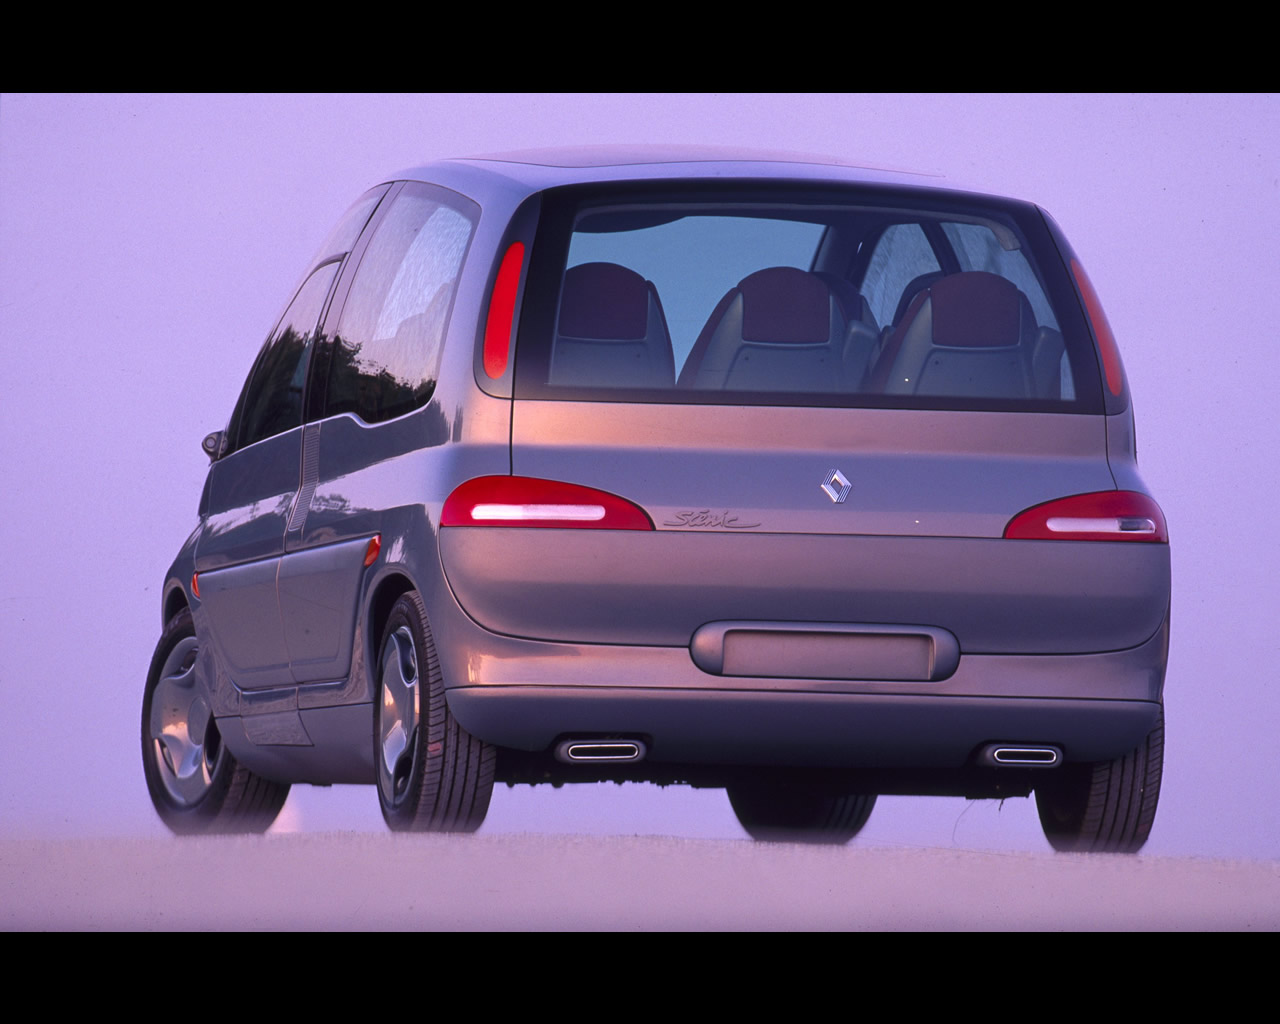 Renault Clio IV (4) - Custom Replacement tacho dials tuning custom